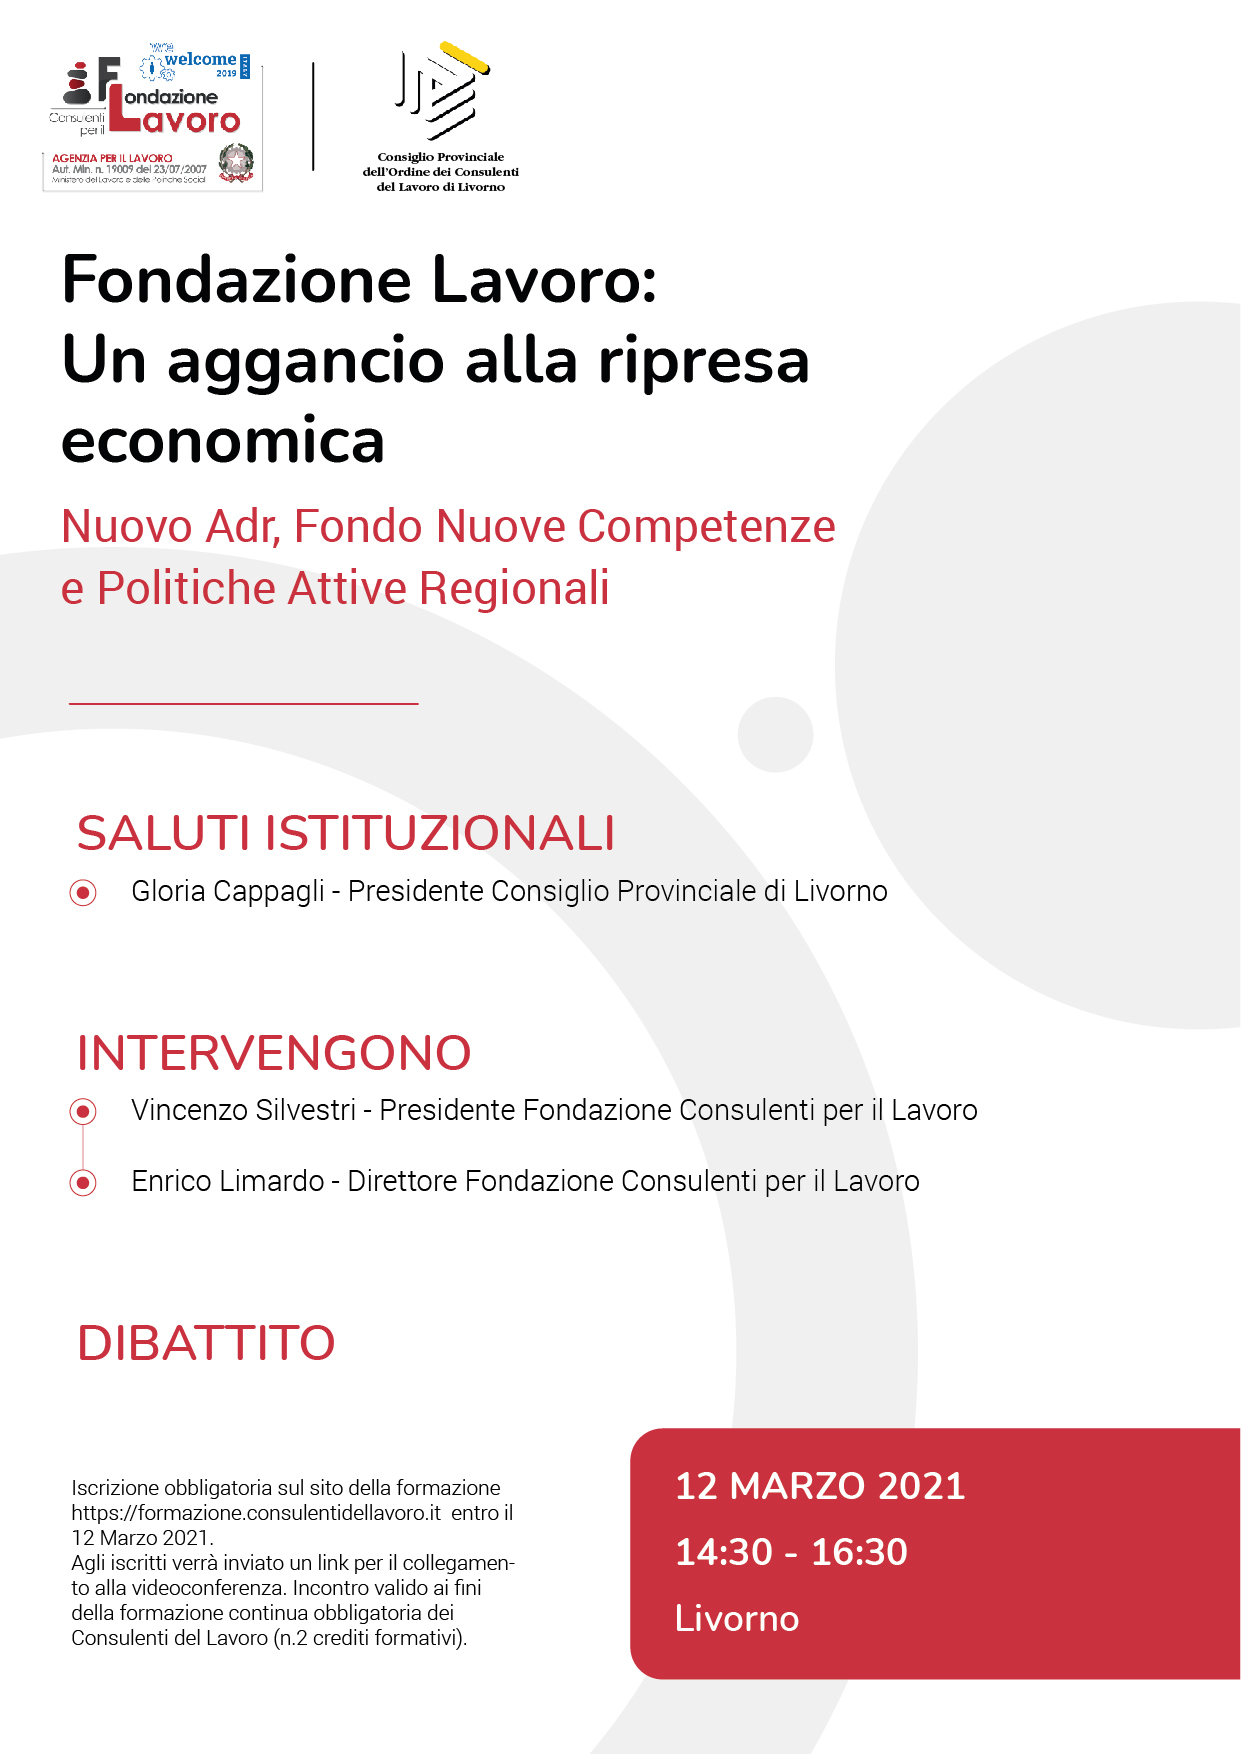 Fondazione Lavoro: Un aggancio alla ripresa economica Nuovo Adr, Fondo Nuove Competenze e Politiche Attive Regionali - Livorno 12 marzo 2021